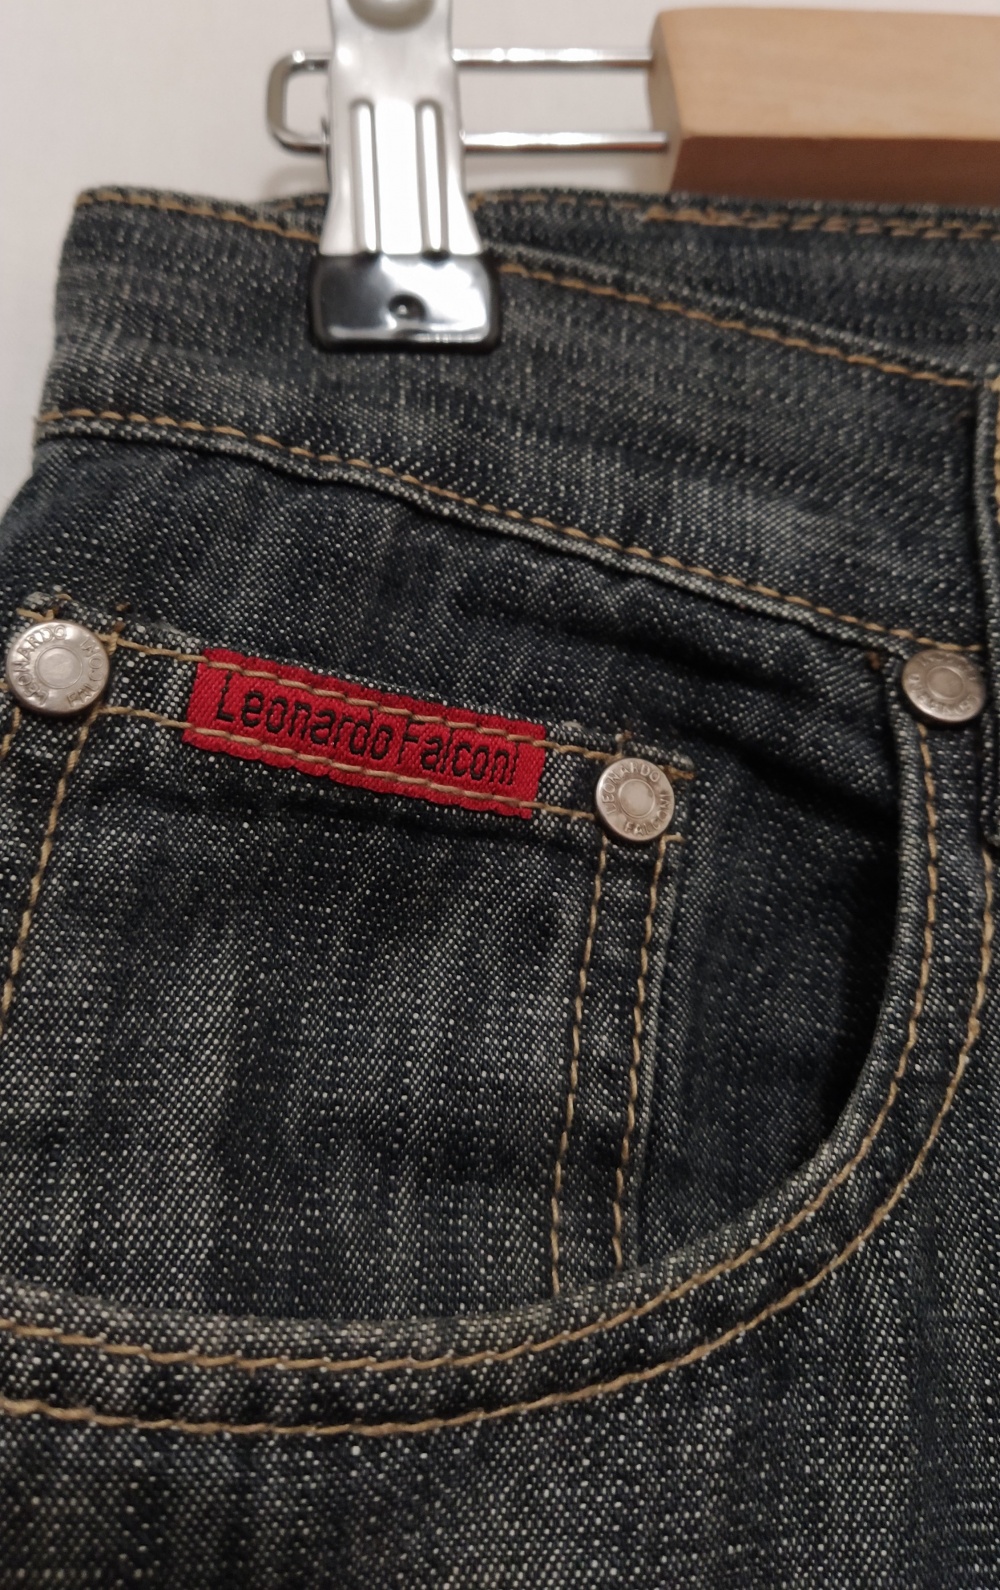 Джинсы Leonardo Falconi, 32 джинсовый размер на 46